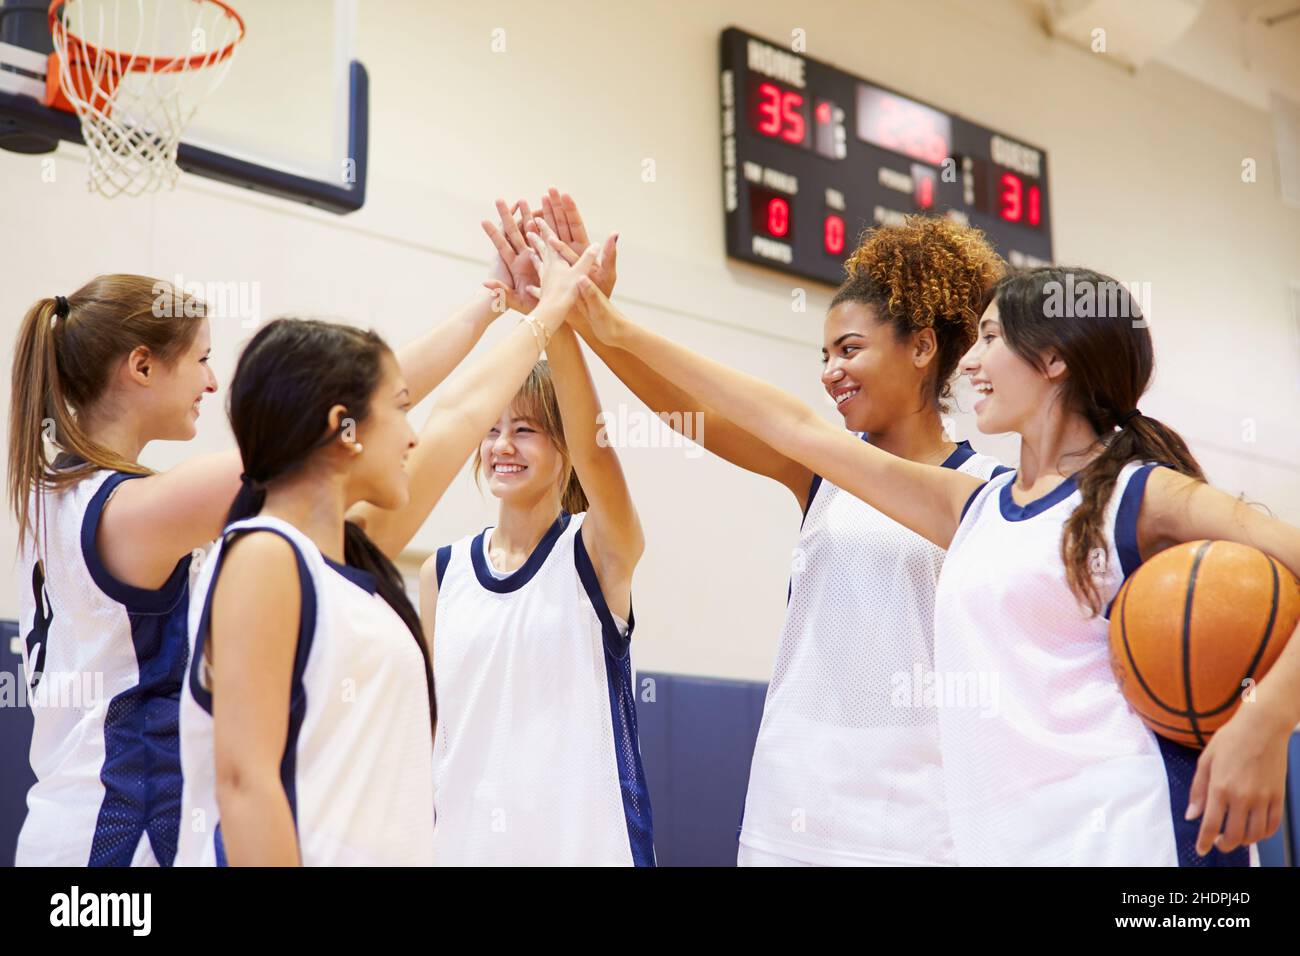 team, won, basketball player, teams, wons, basketball players Stock Photo